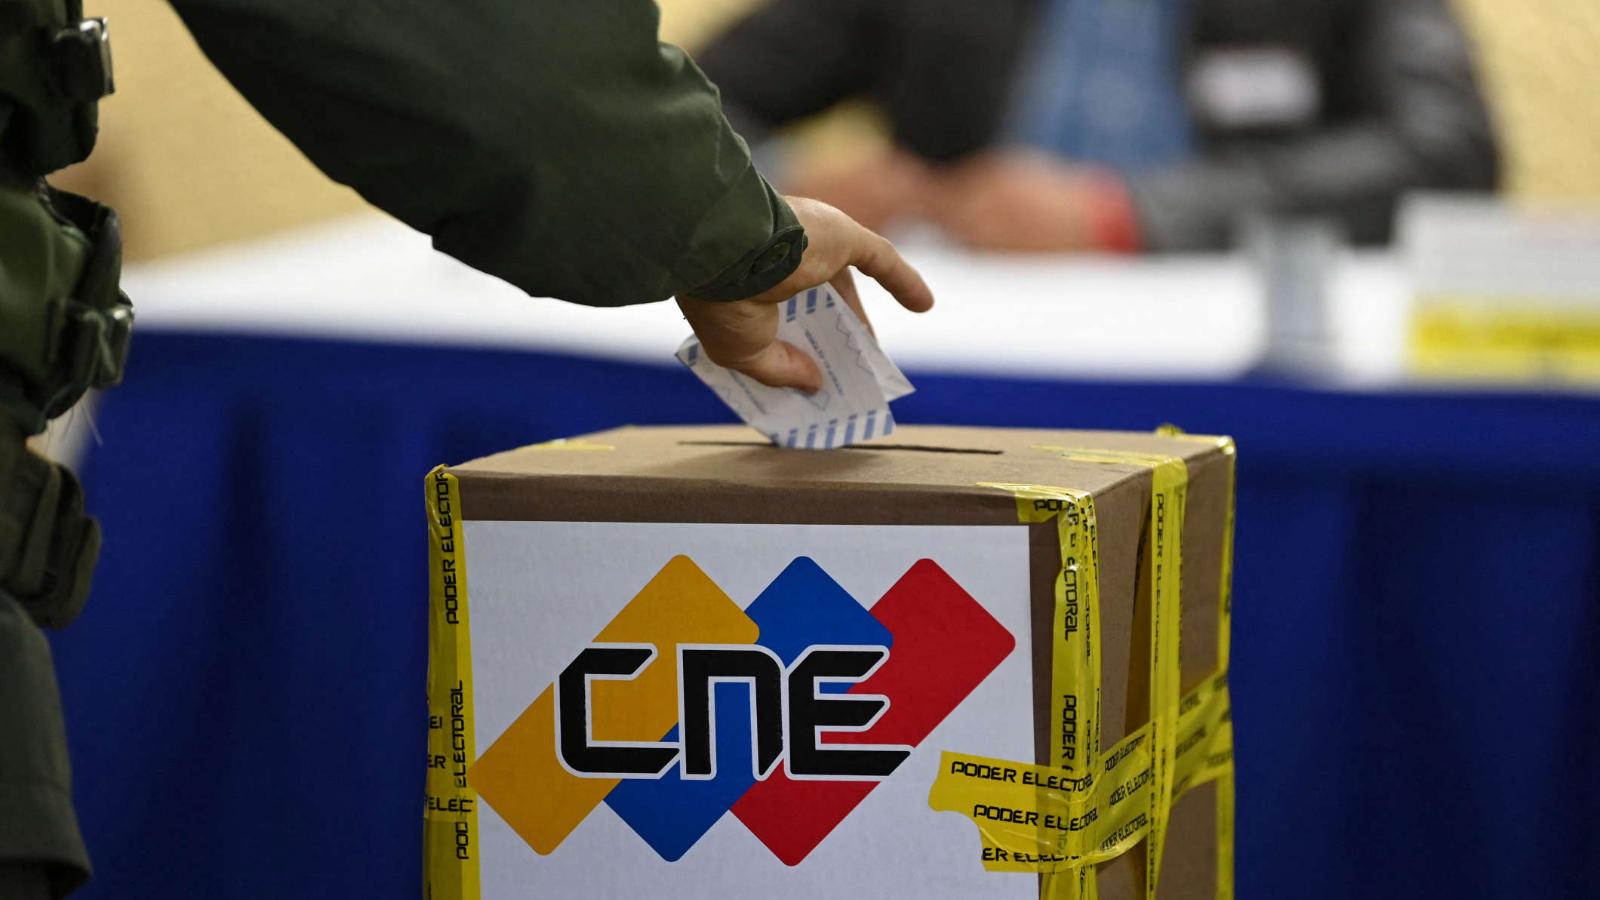 La oposición reitera fecha de los comicios internos; el CNE responde que tiene la “competencia exclusiva” para organizar elecciones